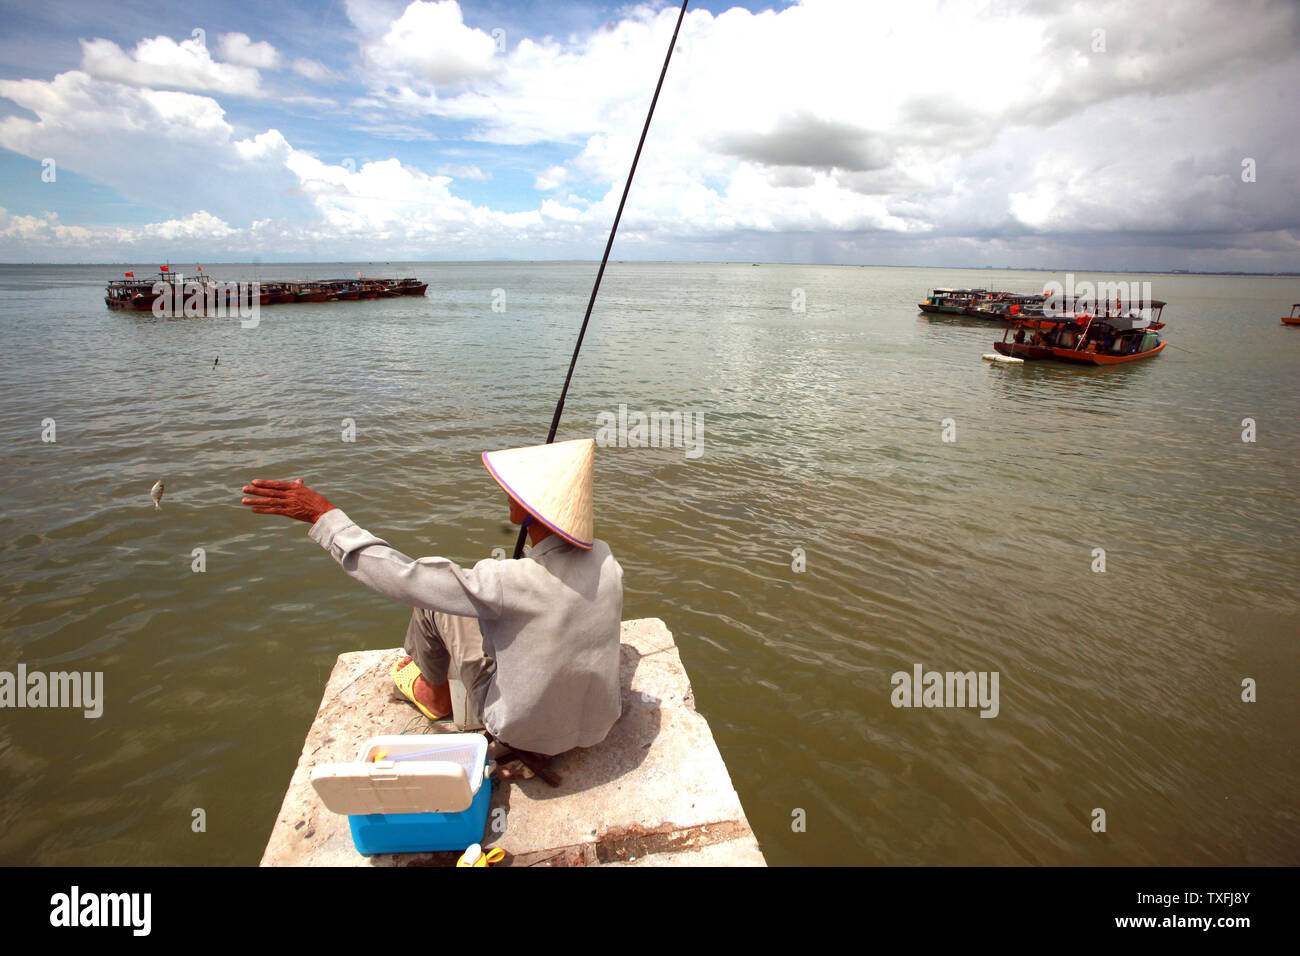 Ein chinesischer Mann Fische in Beihai, einer Küstenstadt im Süden der Provinz Guangxi, China am 5. September 2014. Obwohl China rasch seine Wirtschaft durch internationalen Handel gestärkt hat, es ist noch immer ein Entwicklungsland aufgrund der Tatsache, dass die Mehrheit der Chinesen haben einen niedrigeren Lebensstandard als die entwickelten Länder. UPI/Stephen Rasierer Stockfoto